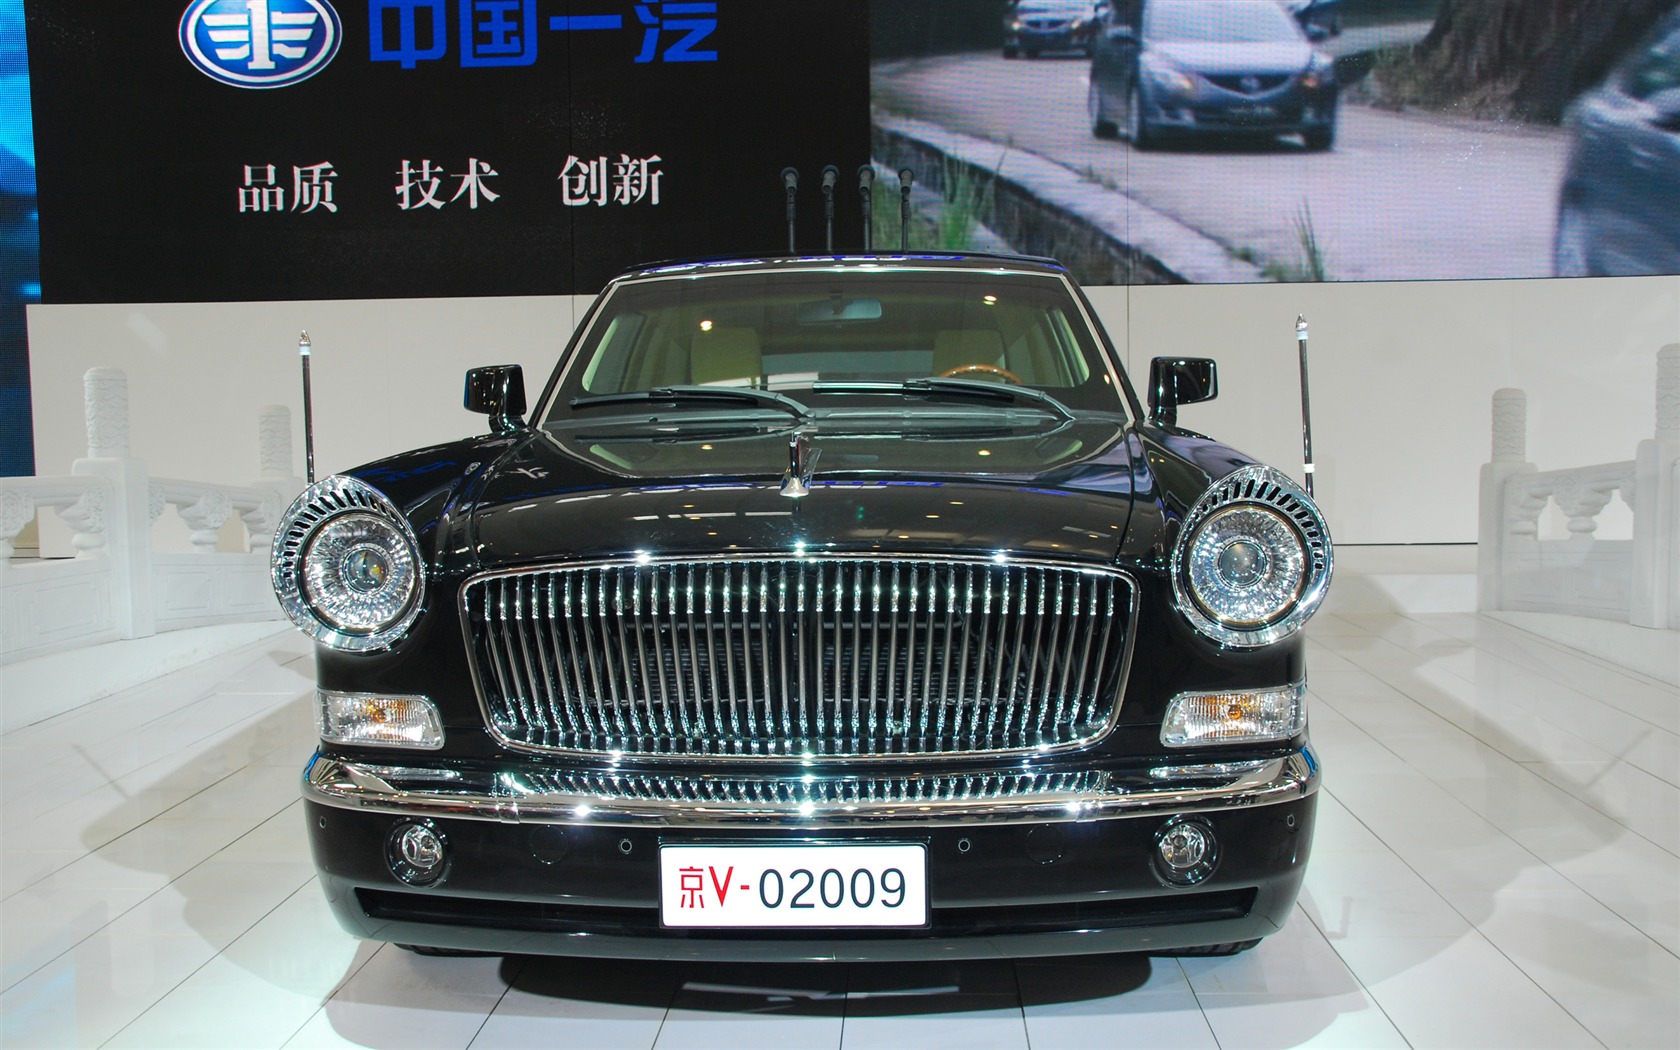 2010北京国际车展(一) (z321x123作品)2 - 1680x1050